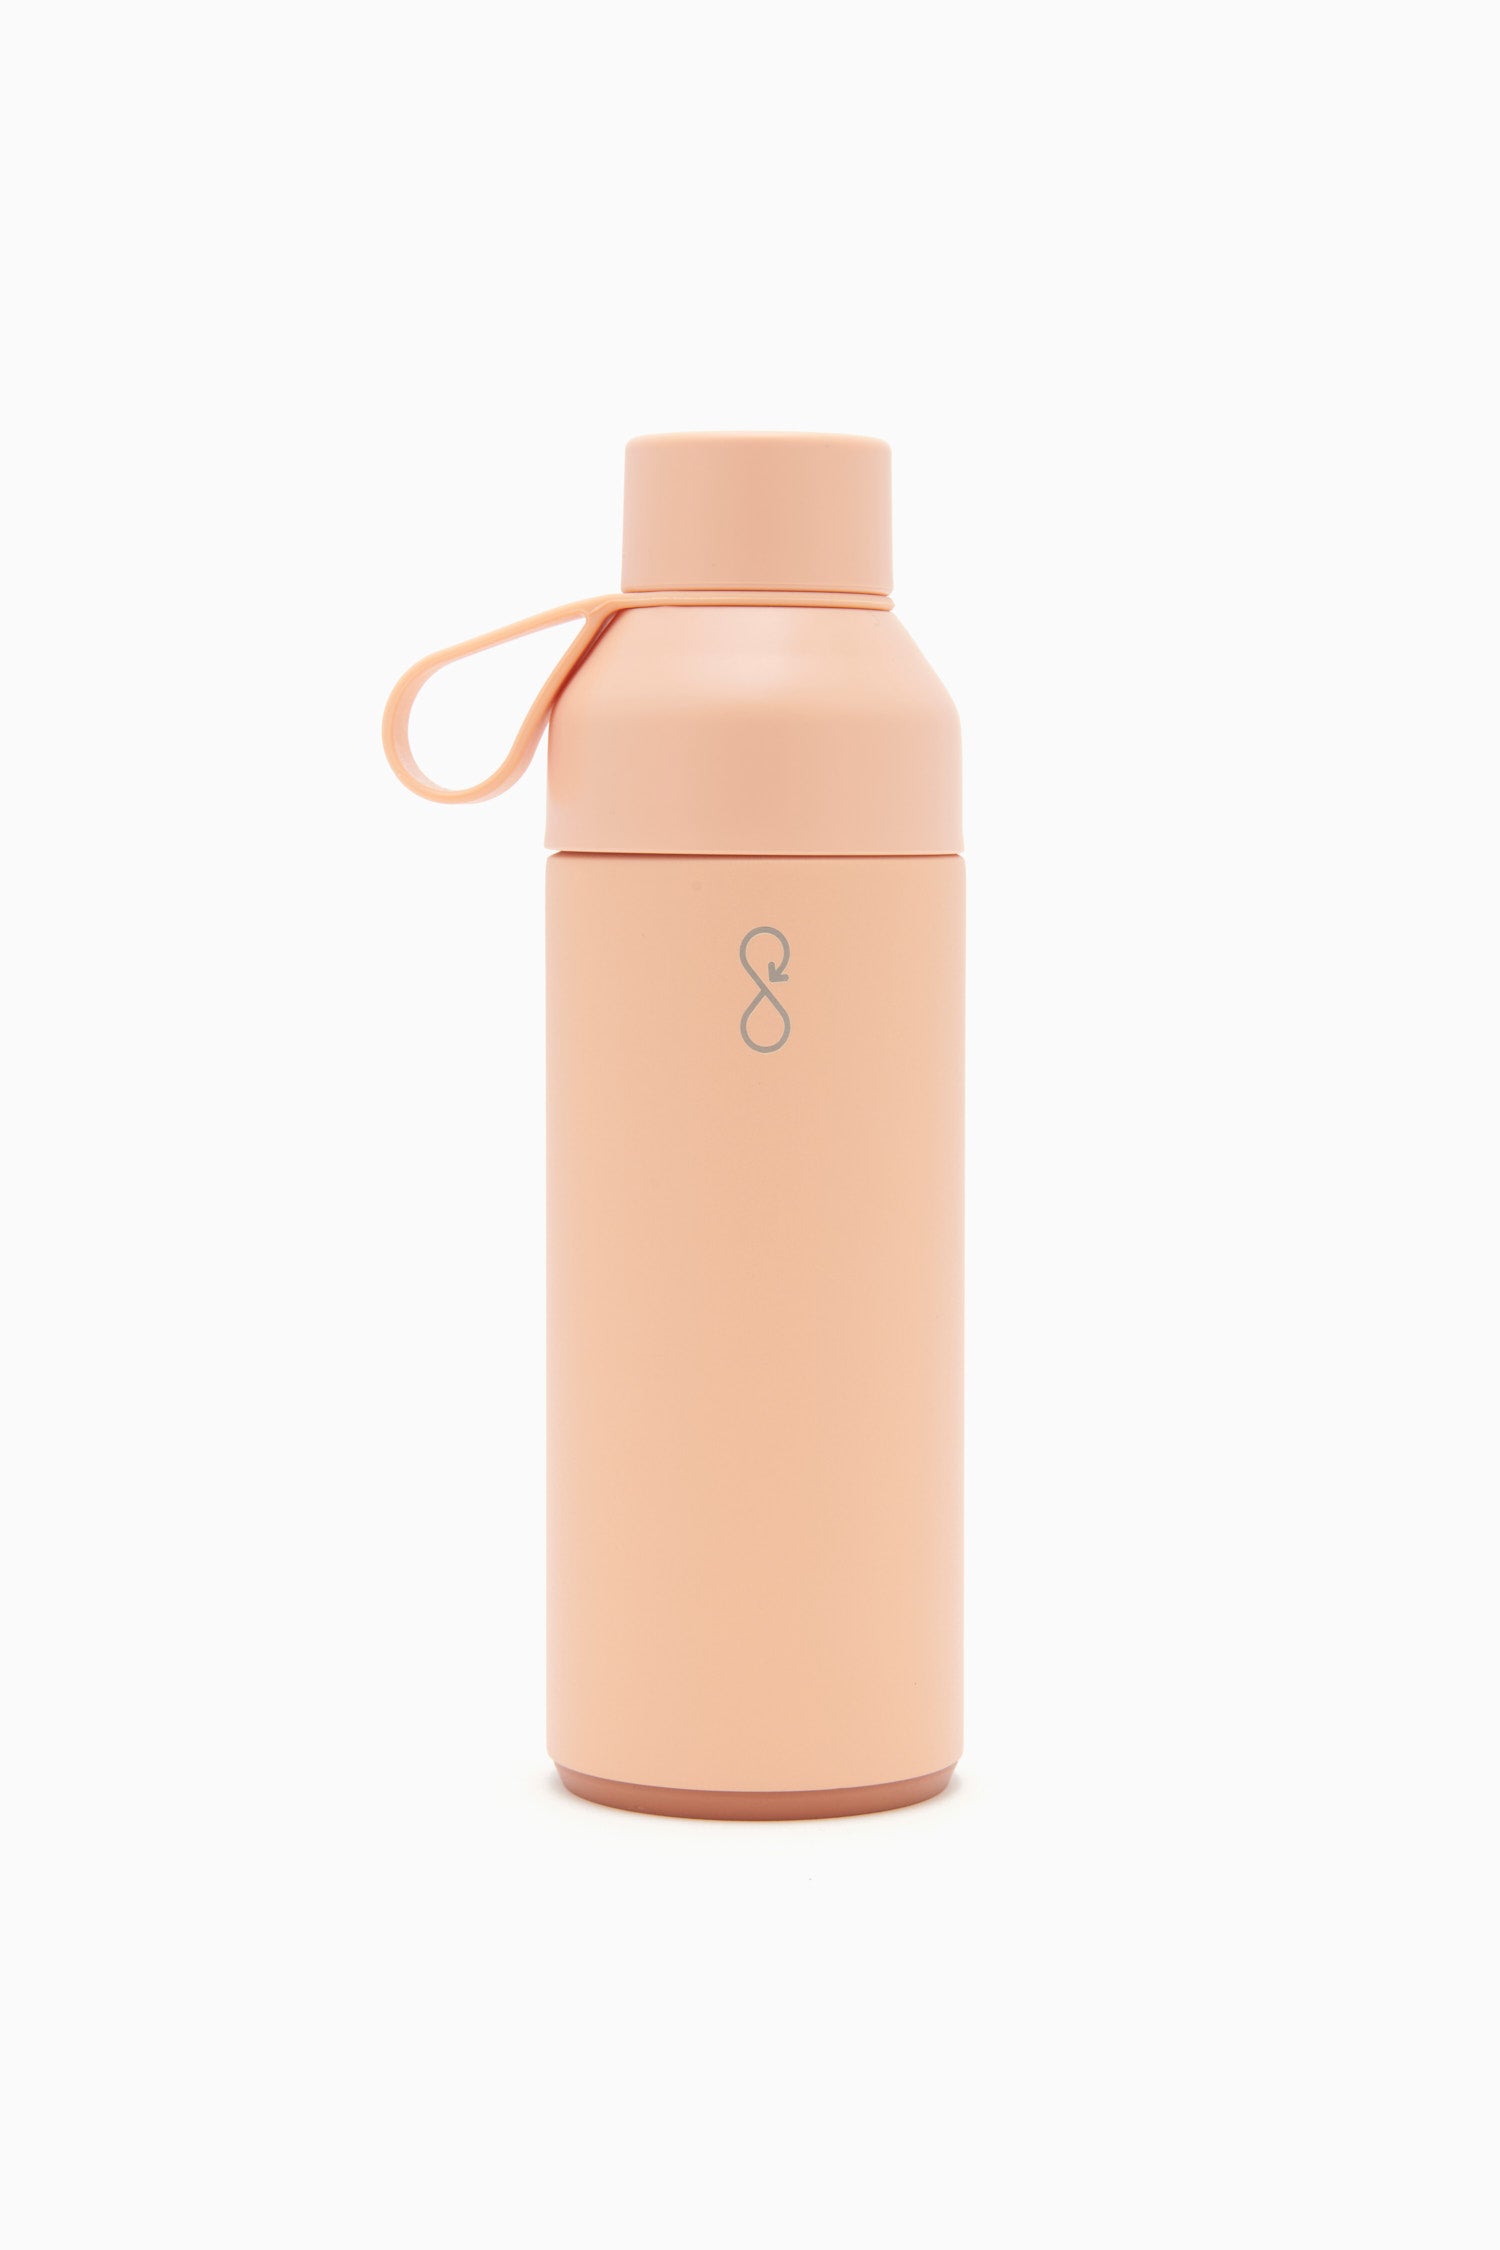 Ulla Johnson Women's Ocean Bottle in Pink